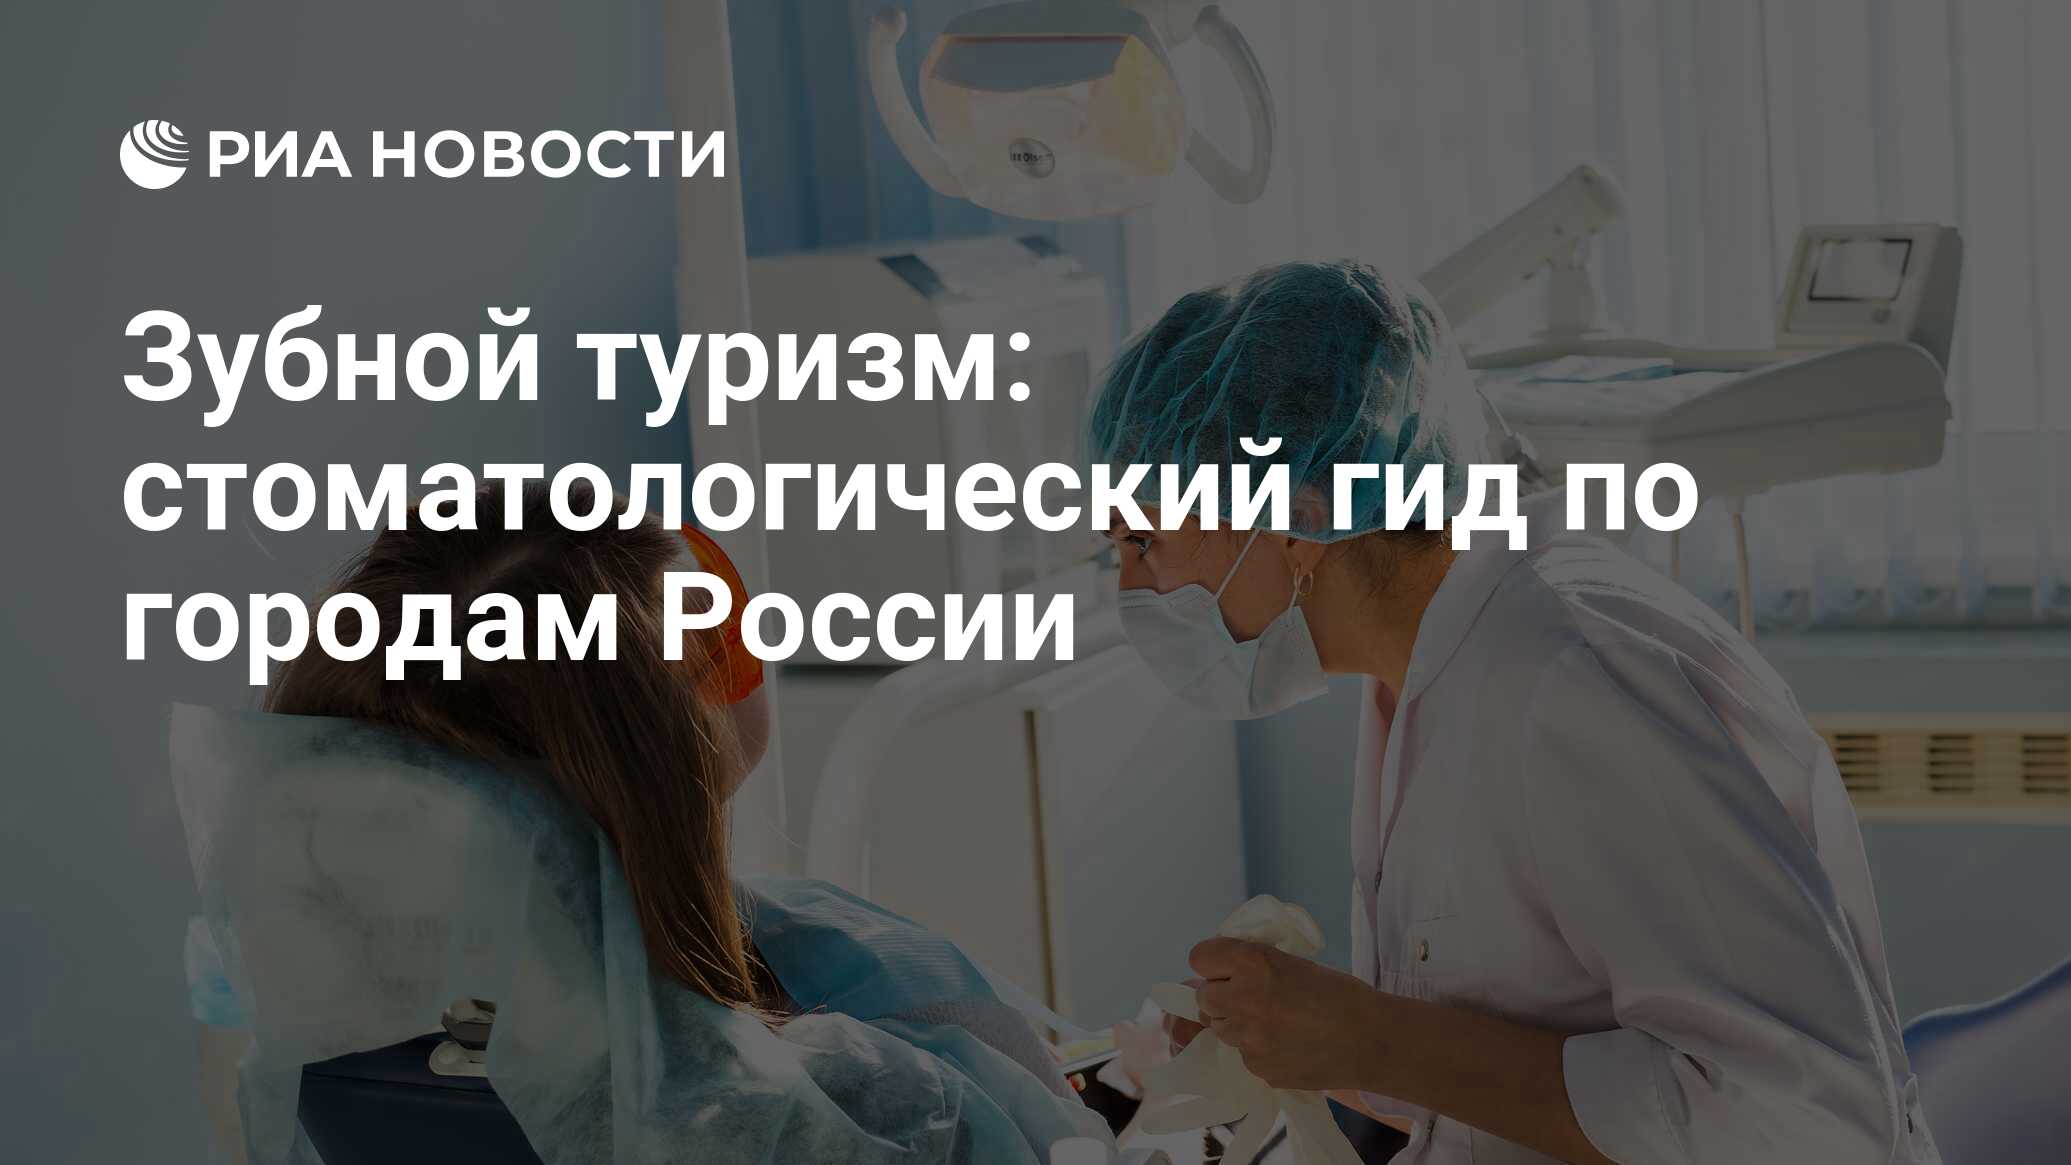 Тур для лечения зубов в россии thumbnail